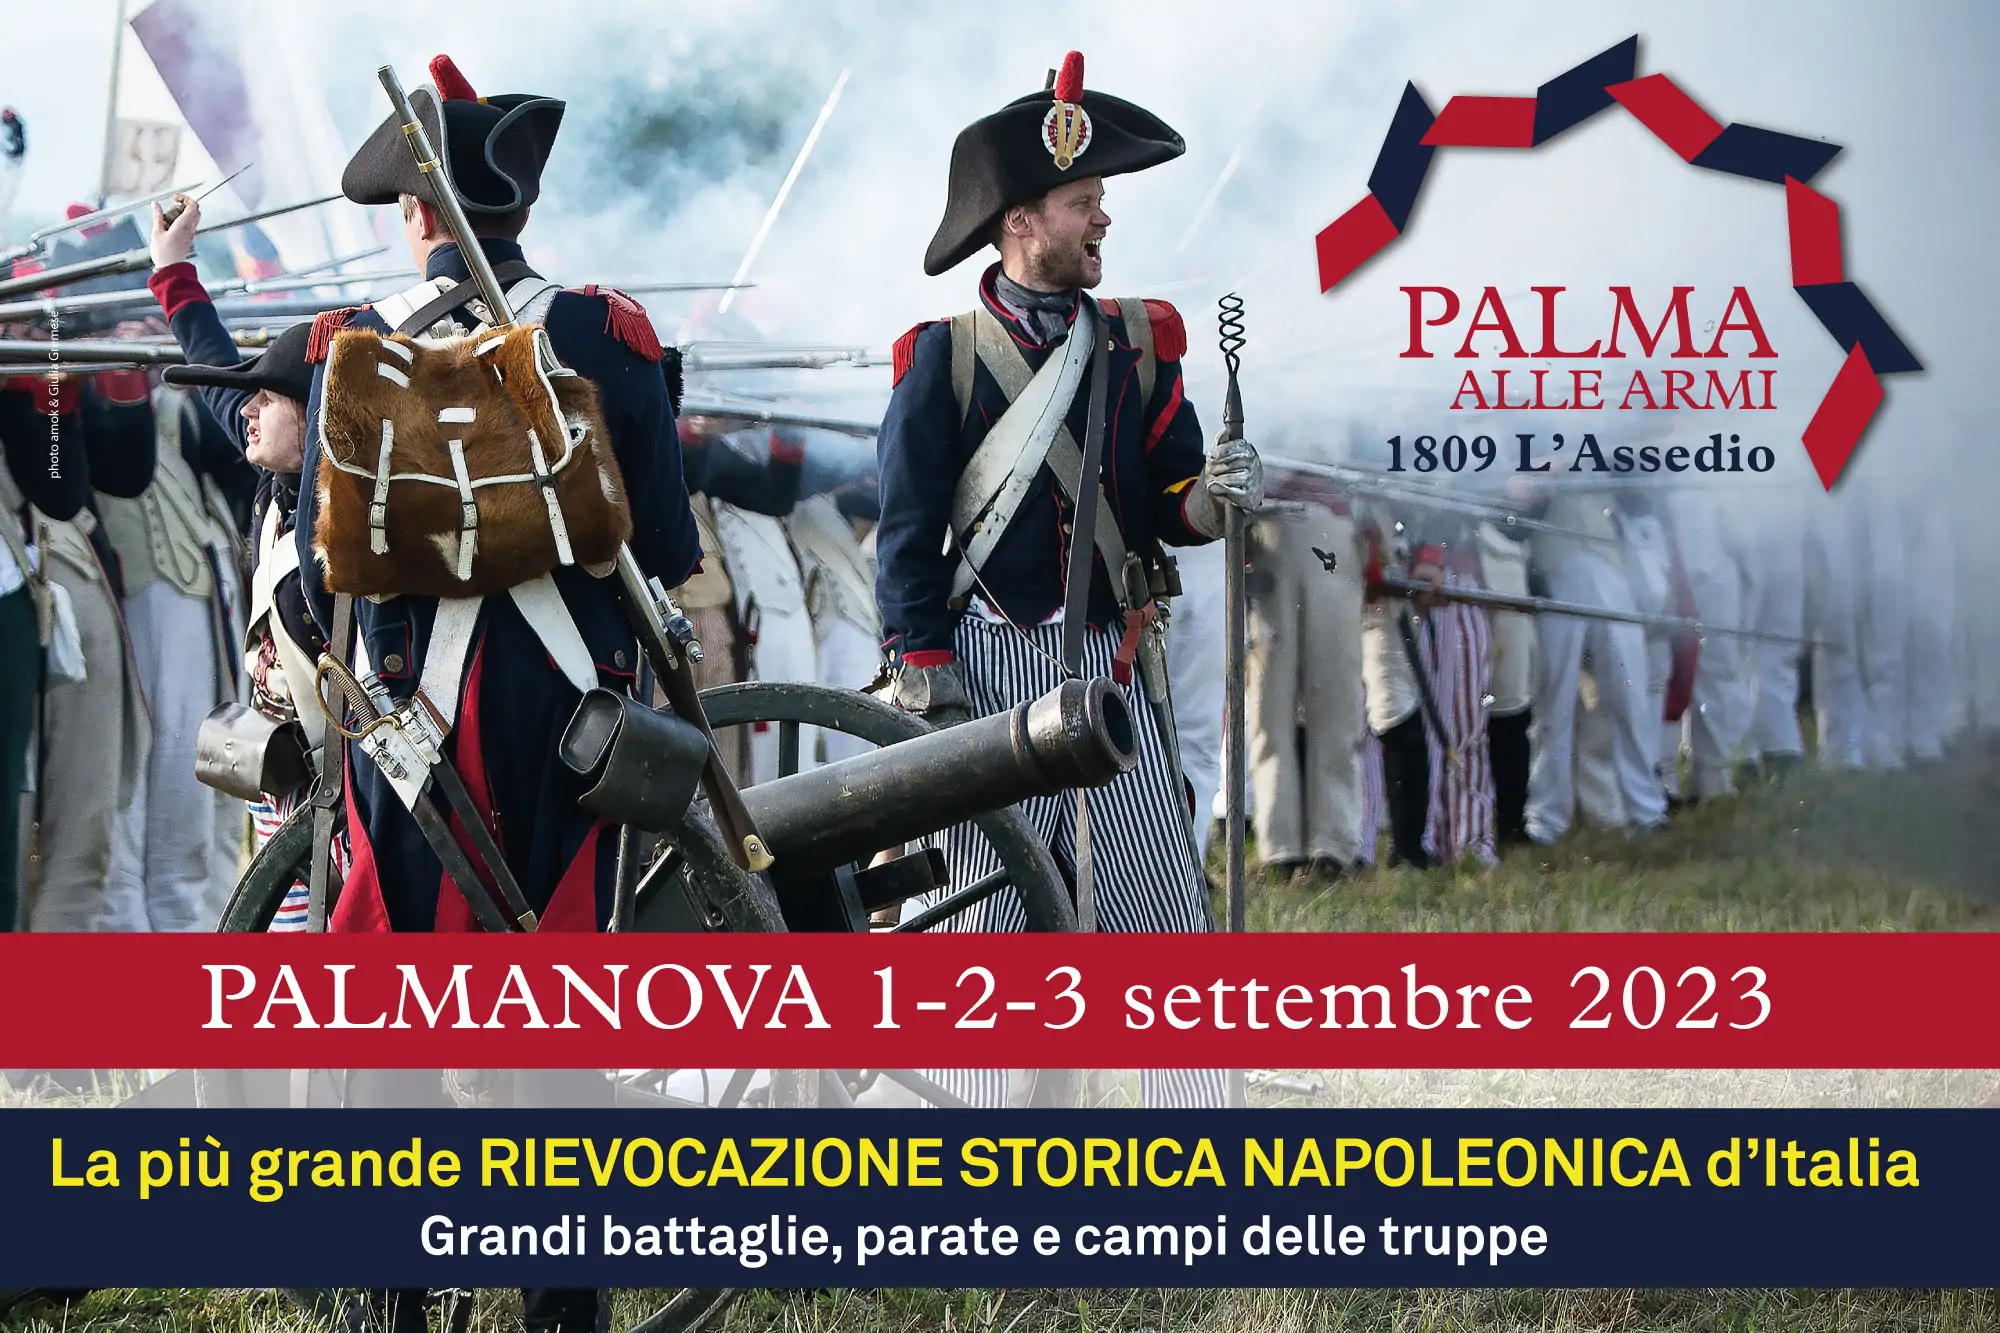 Palma alle Armi 1809 L’assedio Rievocazione Storica di Palmanova